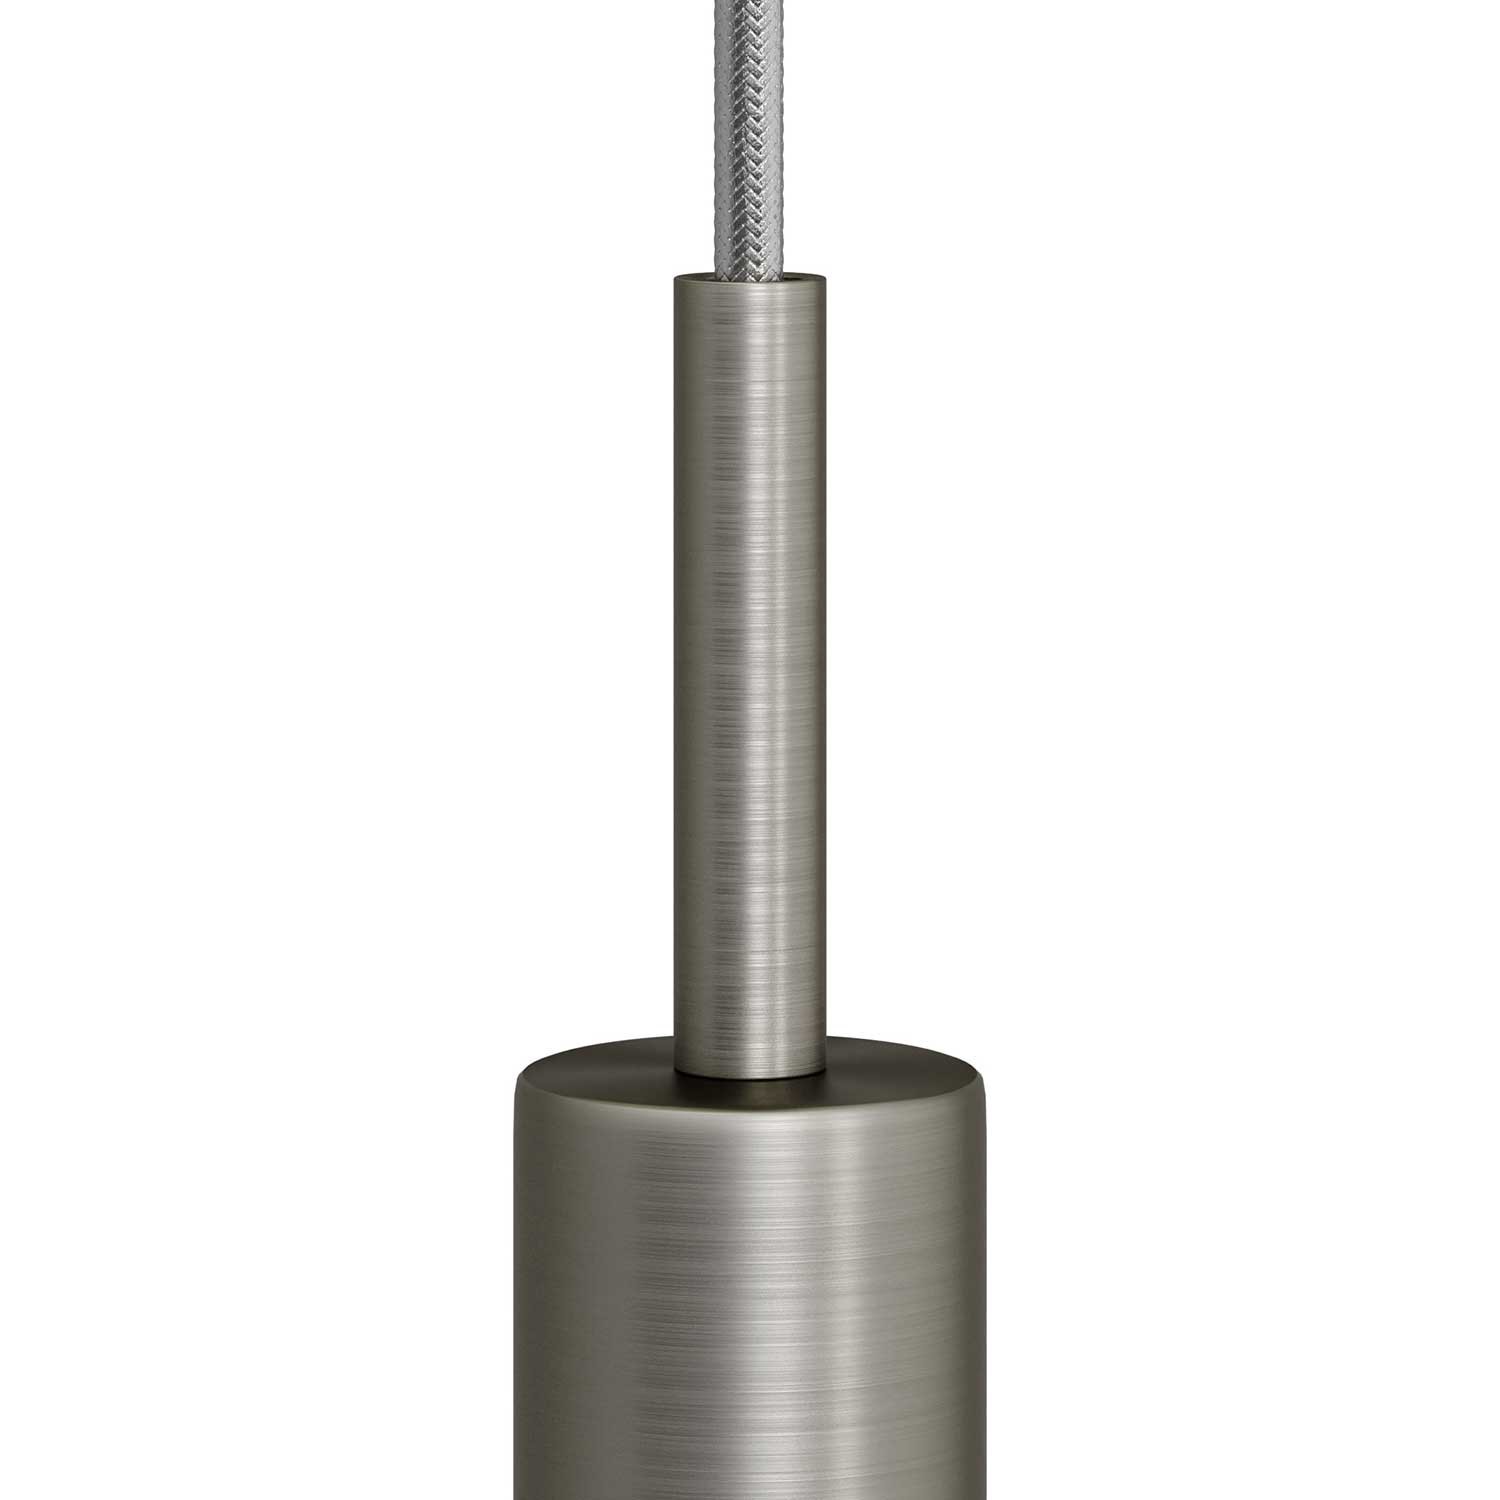 Runde Zugentlastung aus Metall, 7 cm lang, komplett mit Gewinderohr, Mutter und Unterlegscheibe